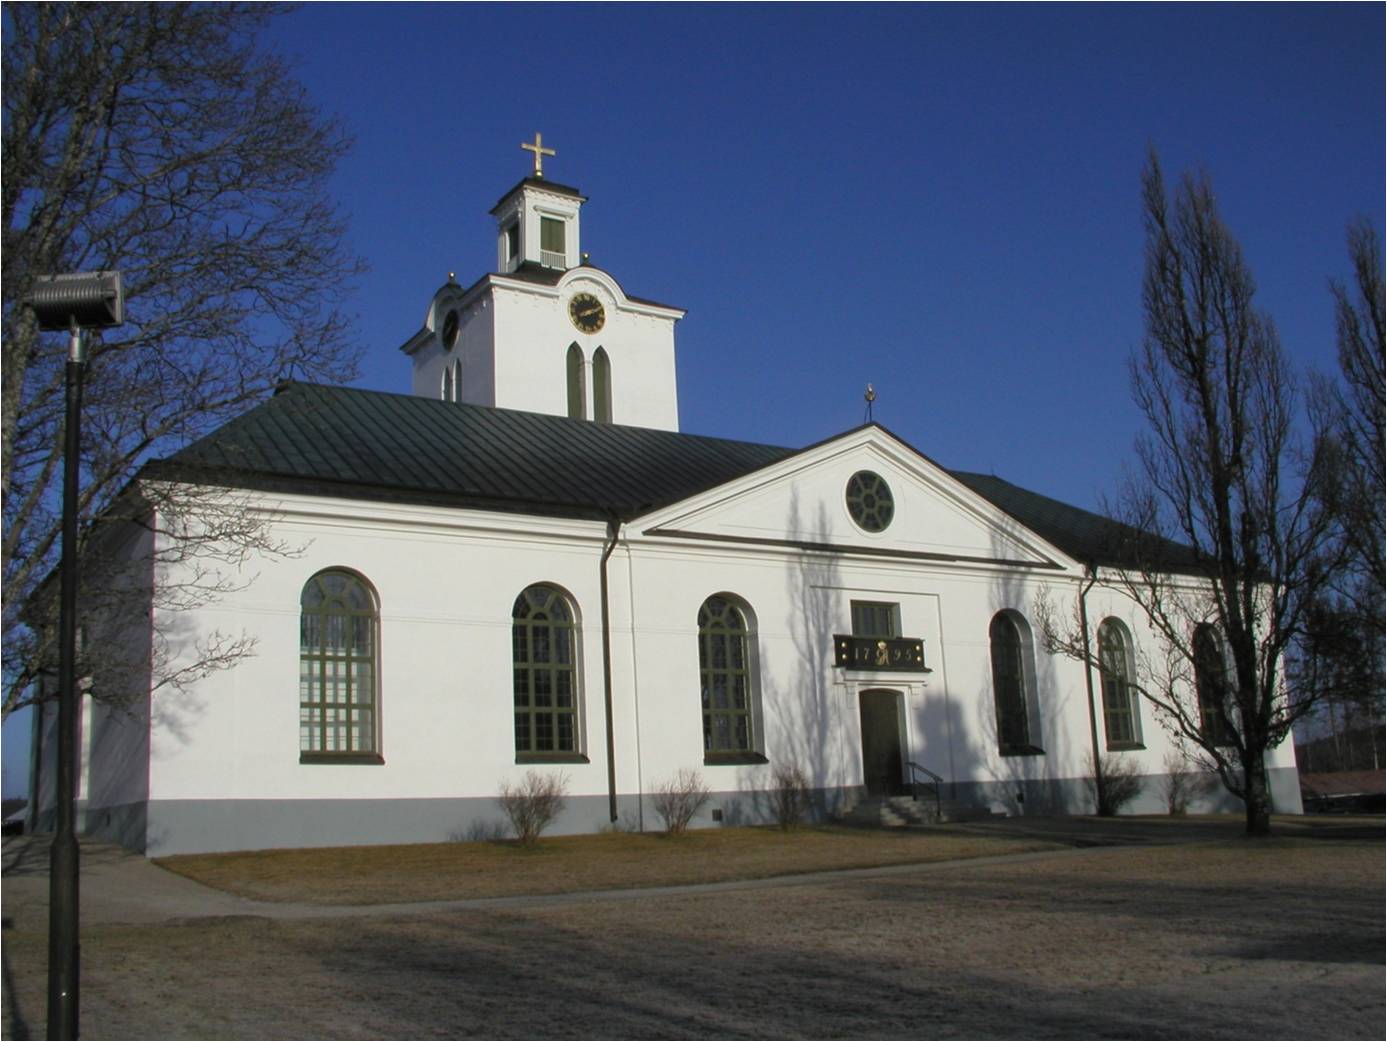 Rengsjö kyrkas södra fasad och del av kyrkotomten.  